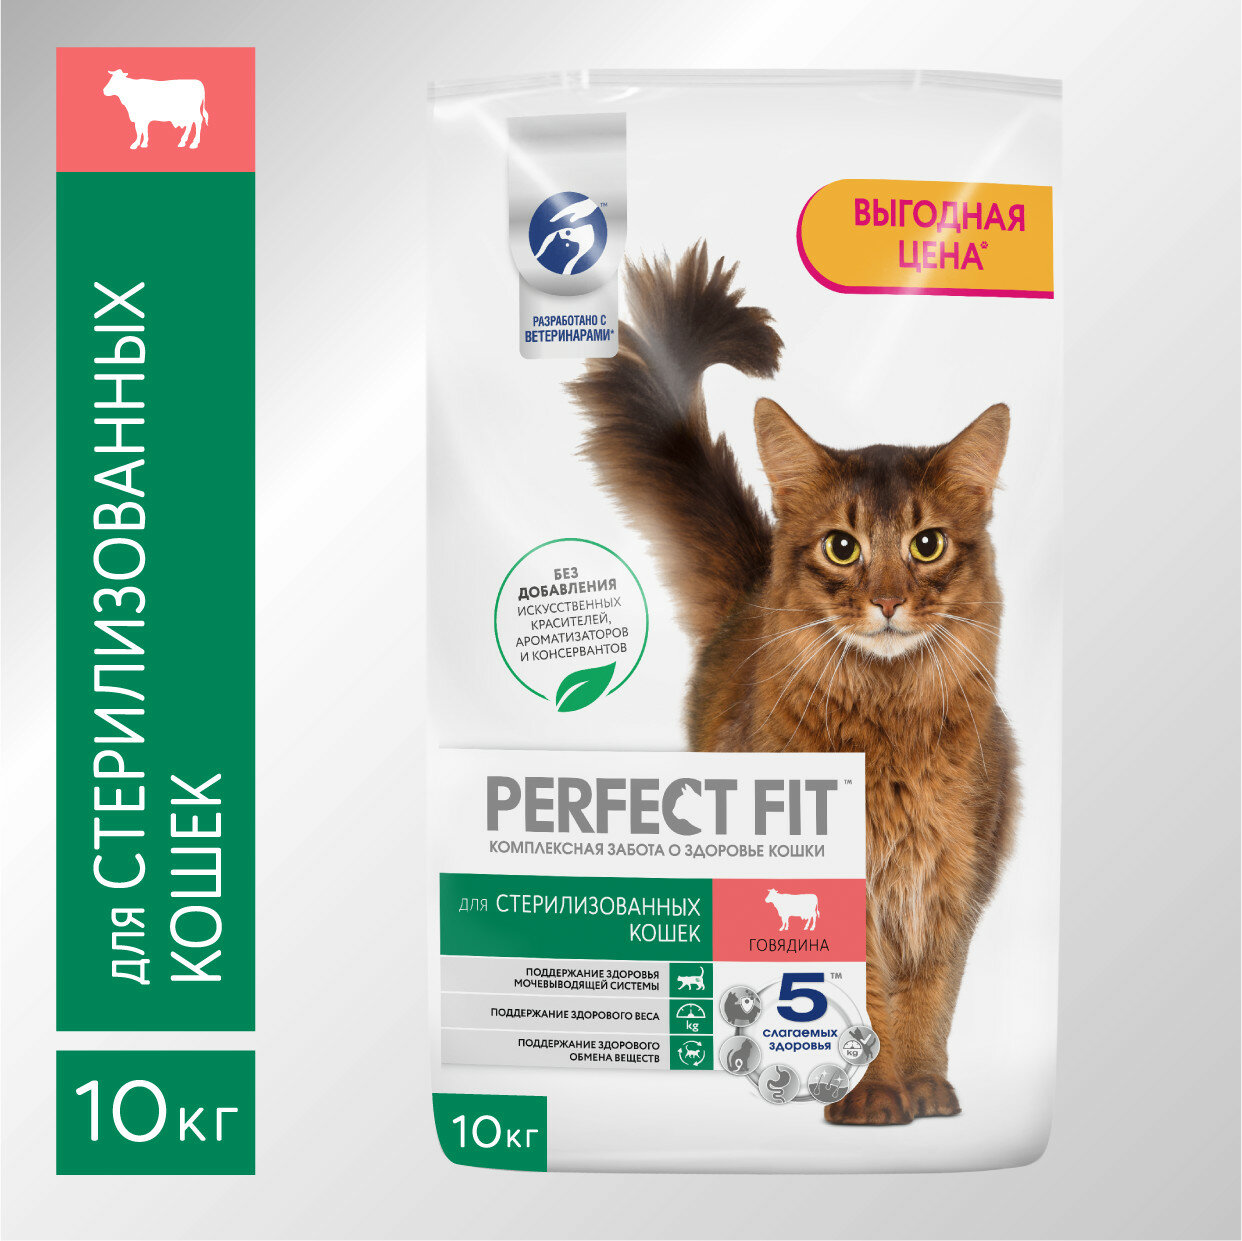 Сухой корм PERFECT FIT™ для стерилизованных кошек, с говядиной, 10кг